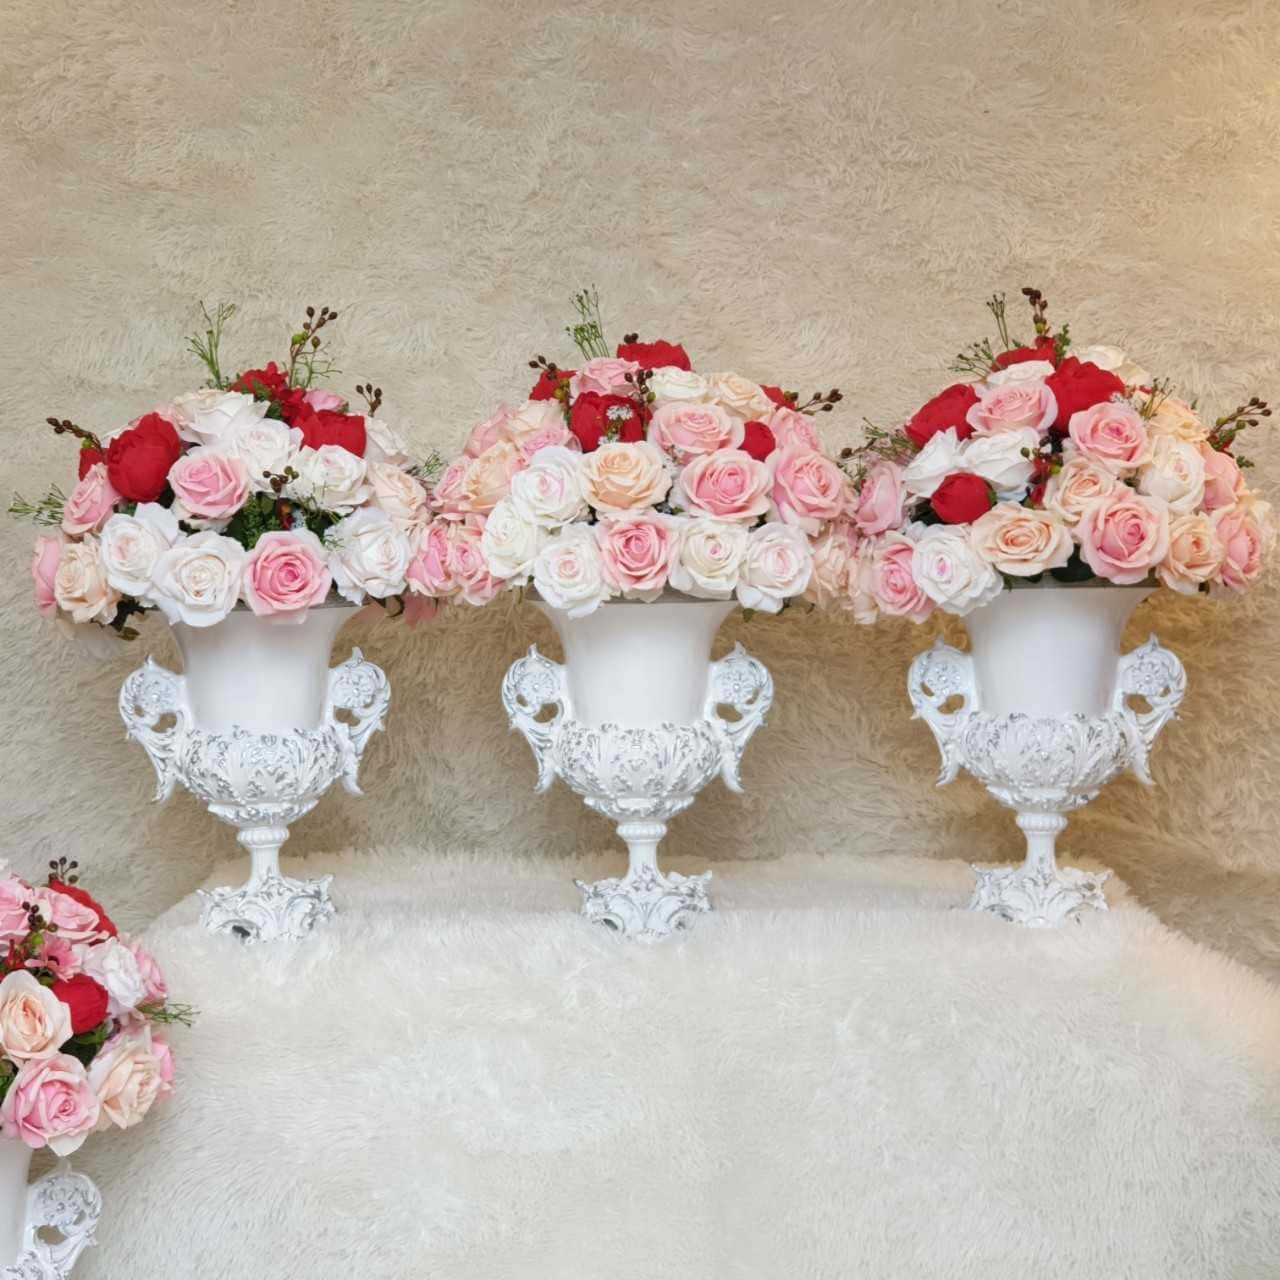 Bình hoa có kích thước độc đáo để bàn đám cưới tạo phong cách mới mẻ